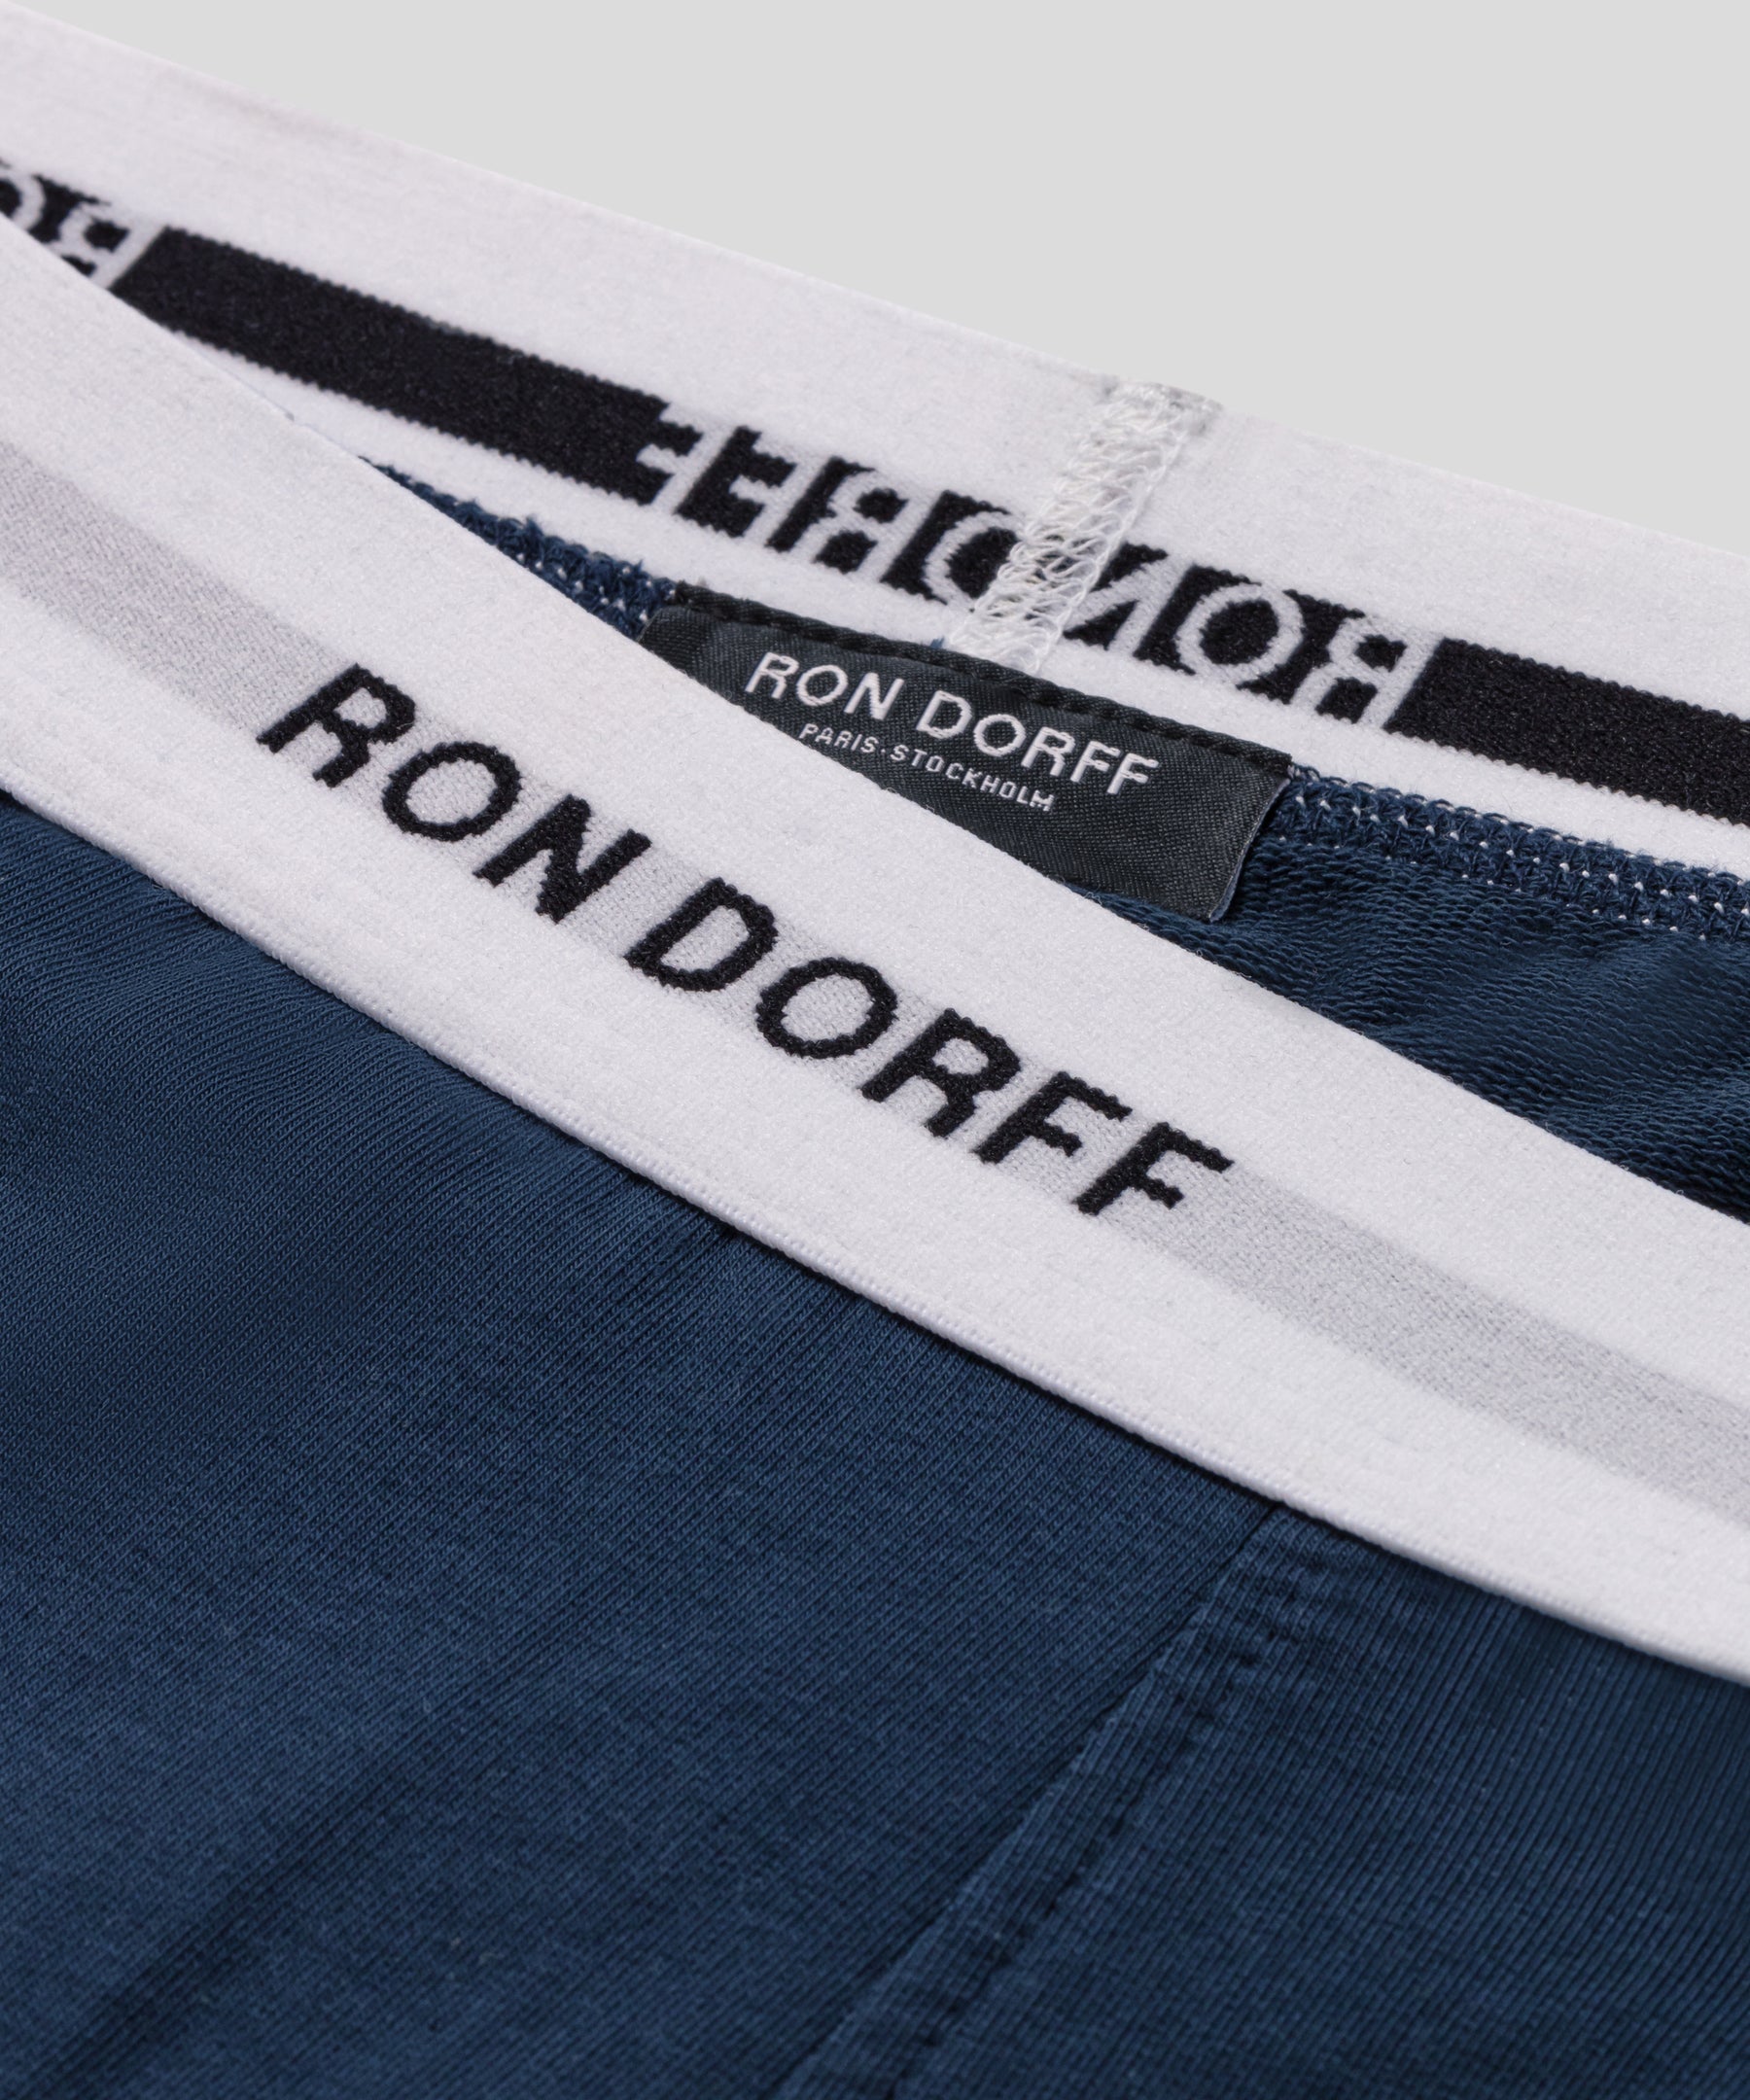 Pantalon d'intérieur en coton à imprimés RON DORFF: Bleu marine